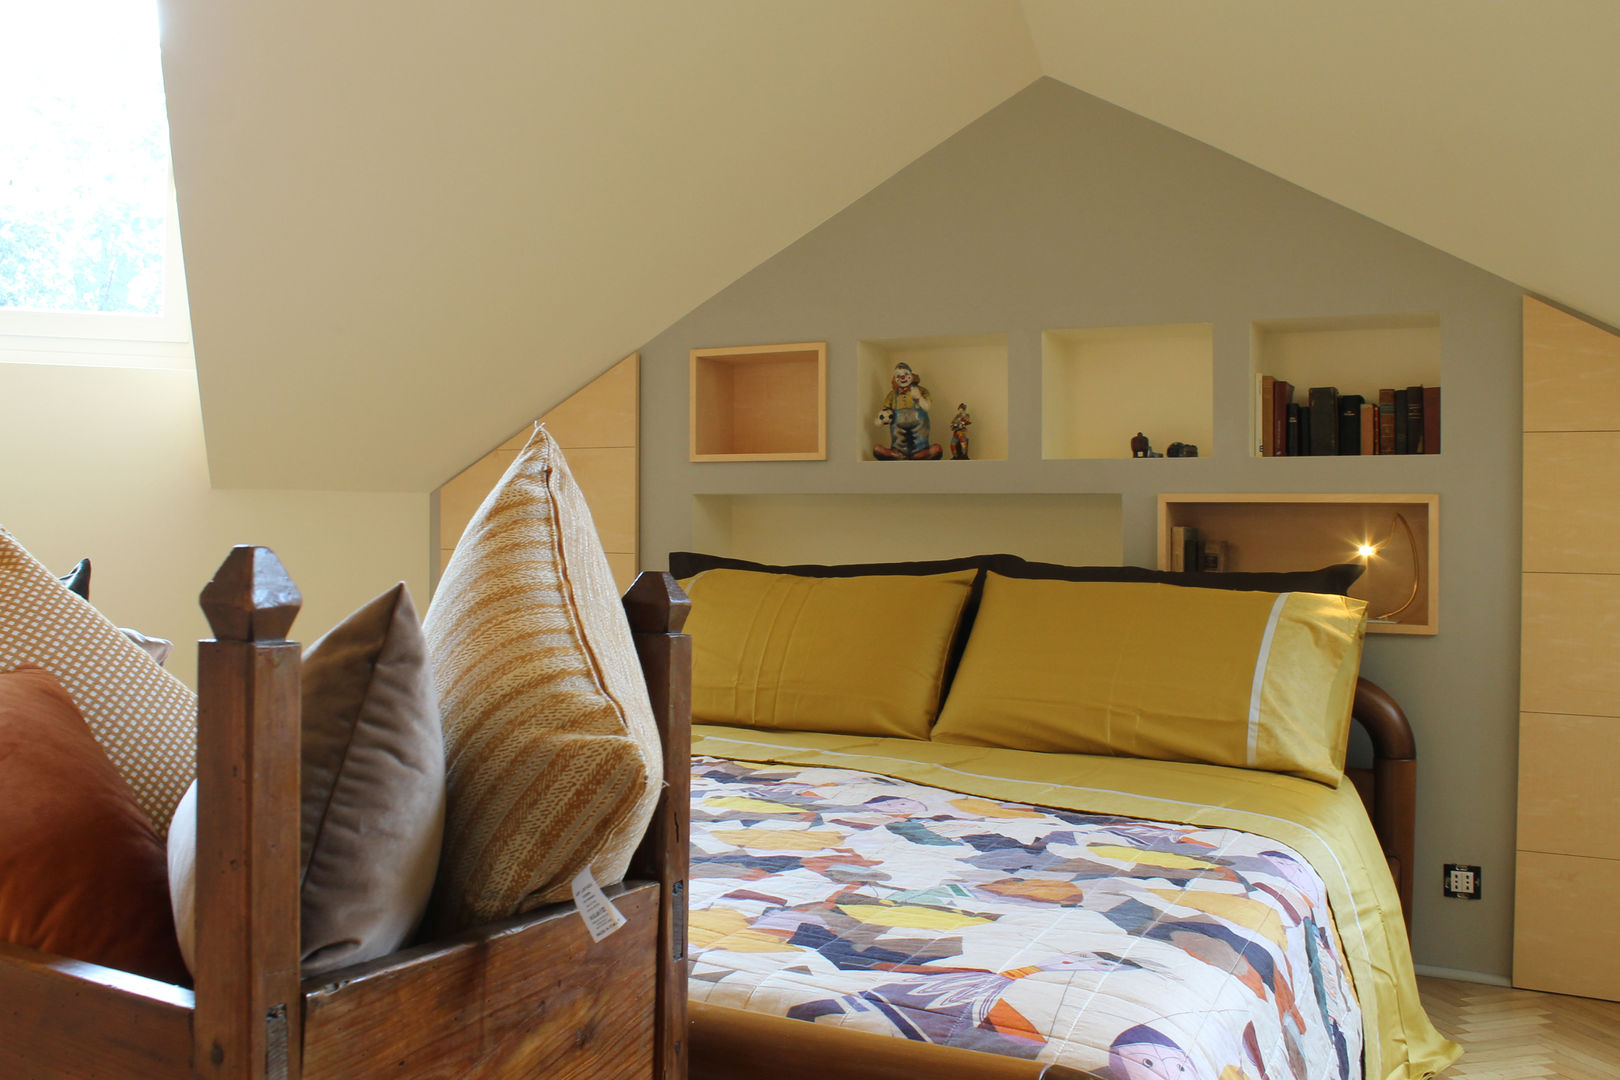 CAMERA SOTTOTETTO: COME SFRUTTARE LO SPAZIO DIETRO AL LETTO CON ARREDO SU MISURA, CC-ARK - SERENA&VALERIA CC-ARK - SERENA&VALERIA Modern style bedroom Wood Wood effect